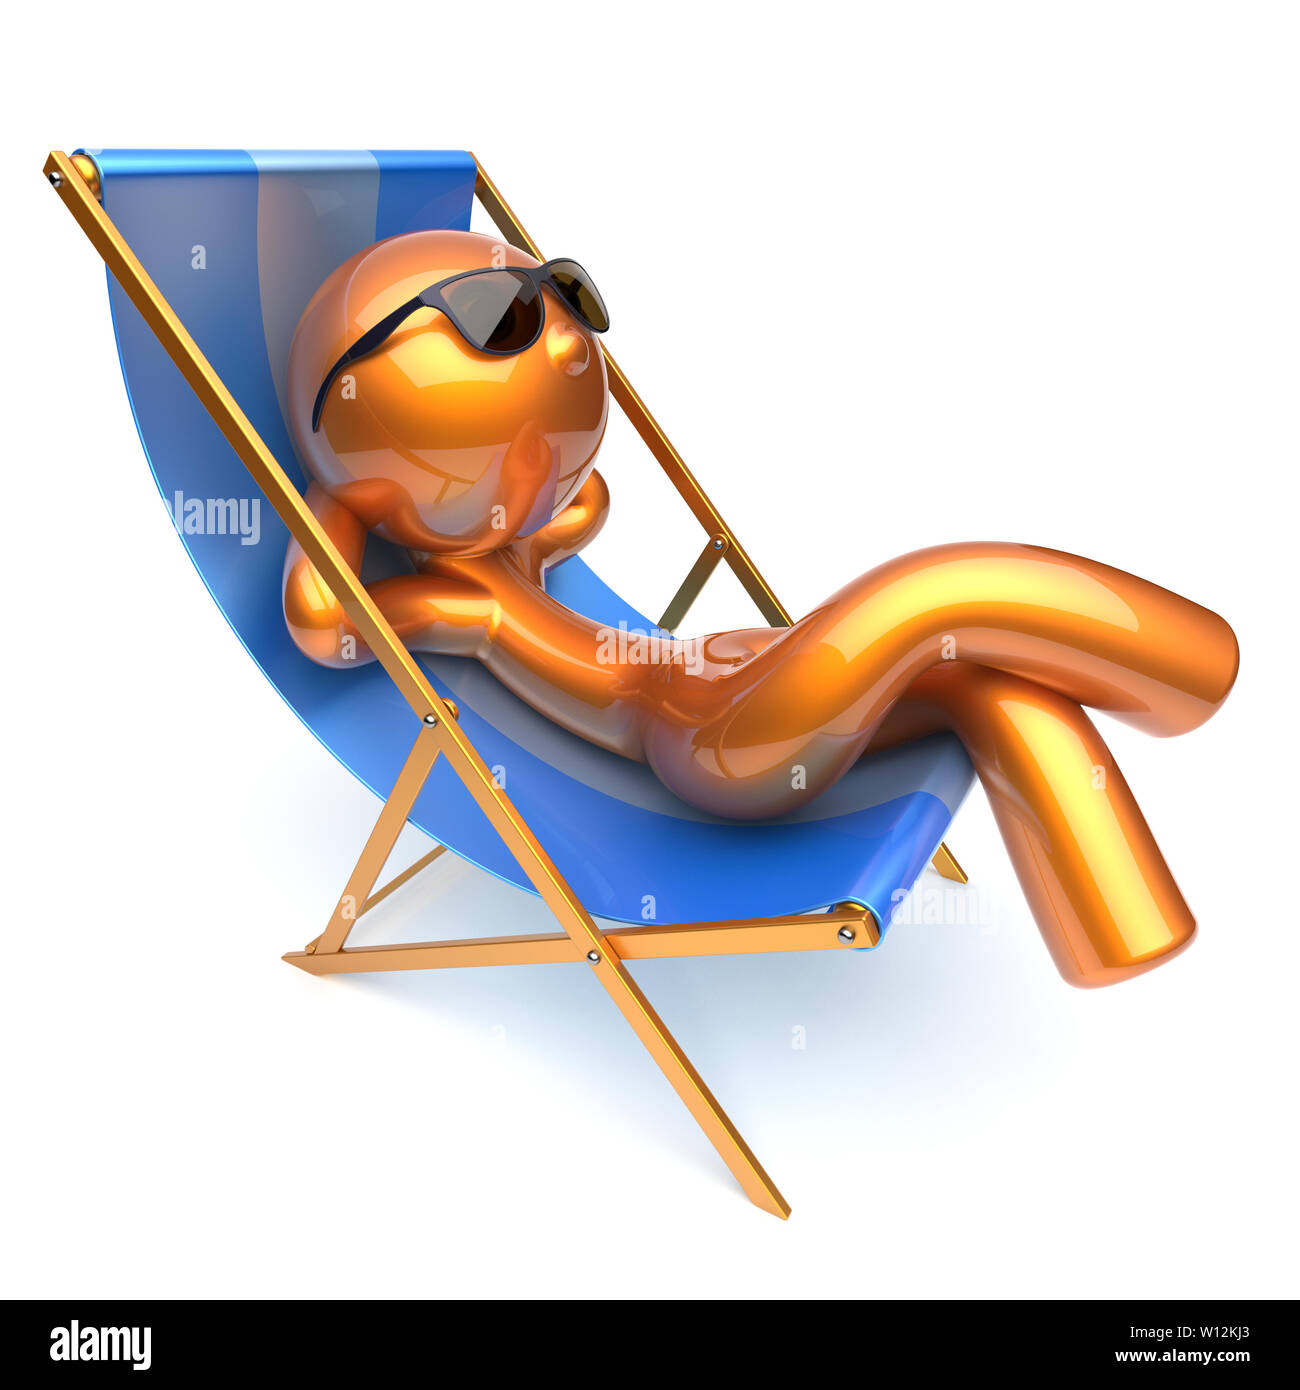 L'uomo rilassante dei cartoni animati di spiaggia di refrigerazione sedia a sdraio occhiali da sole il comfort estivo stilizzata golden persona sdraio chaise lounge prendisole turistica Foto Stock